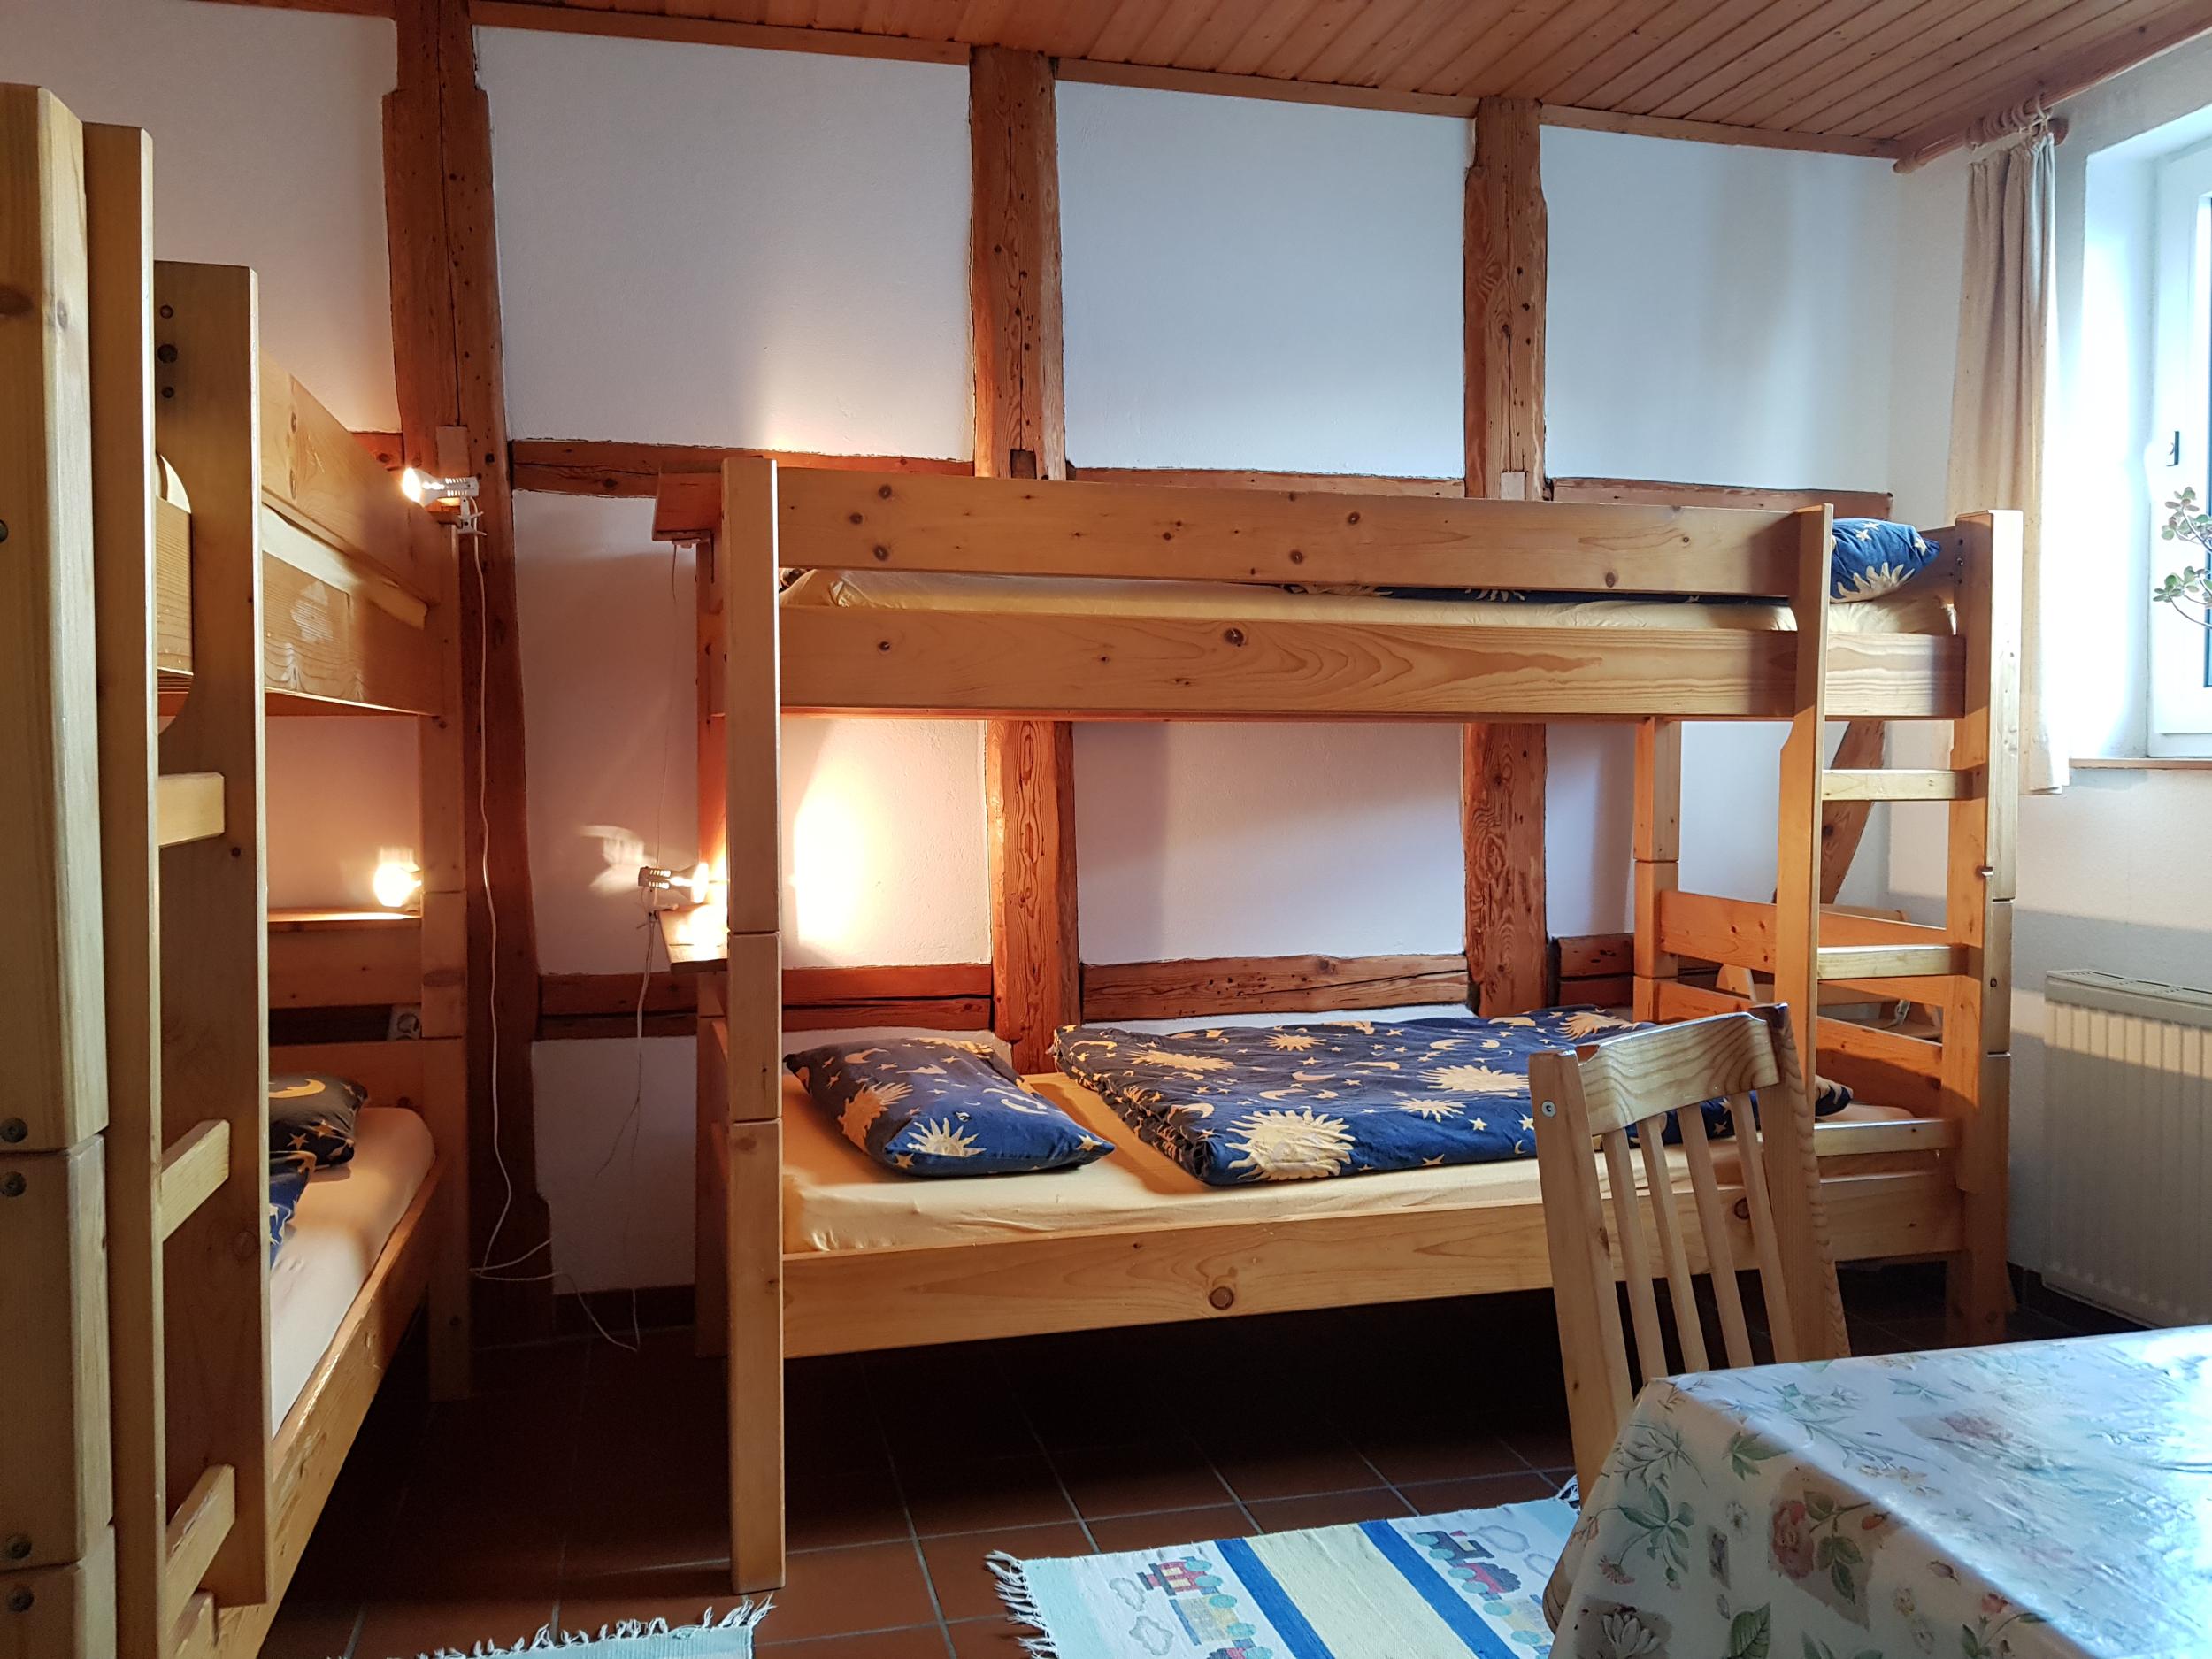 Ferienwohnung Trollblume in Hohegeiß - Schlafzimmer